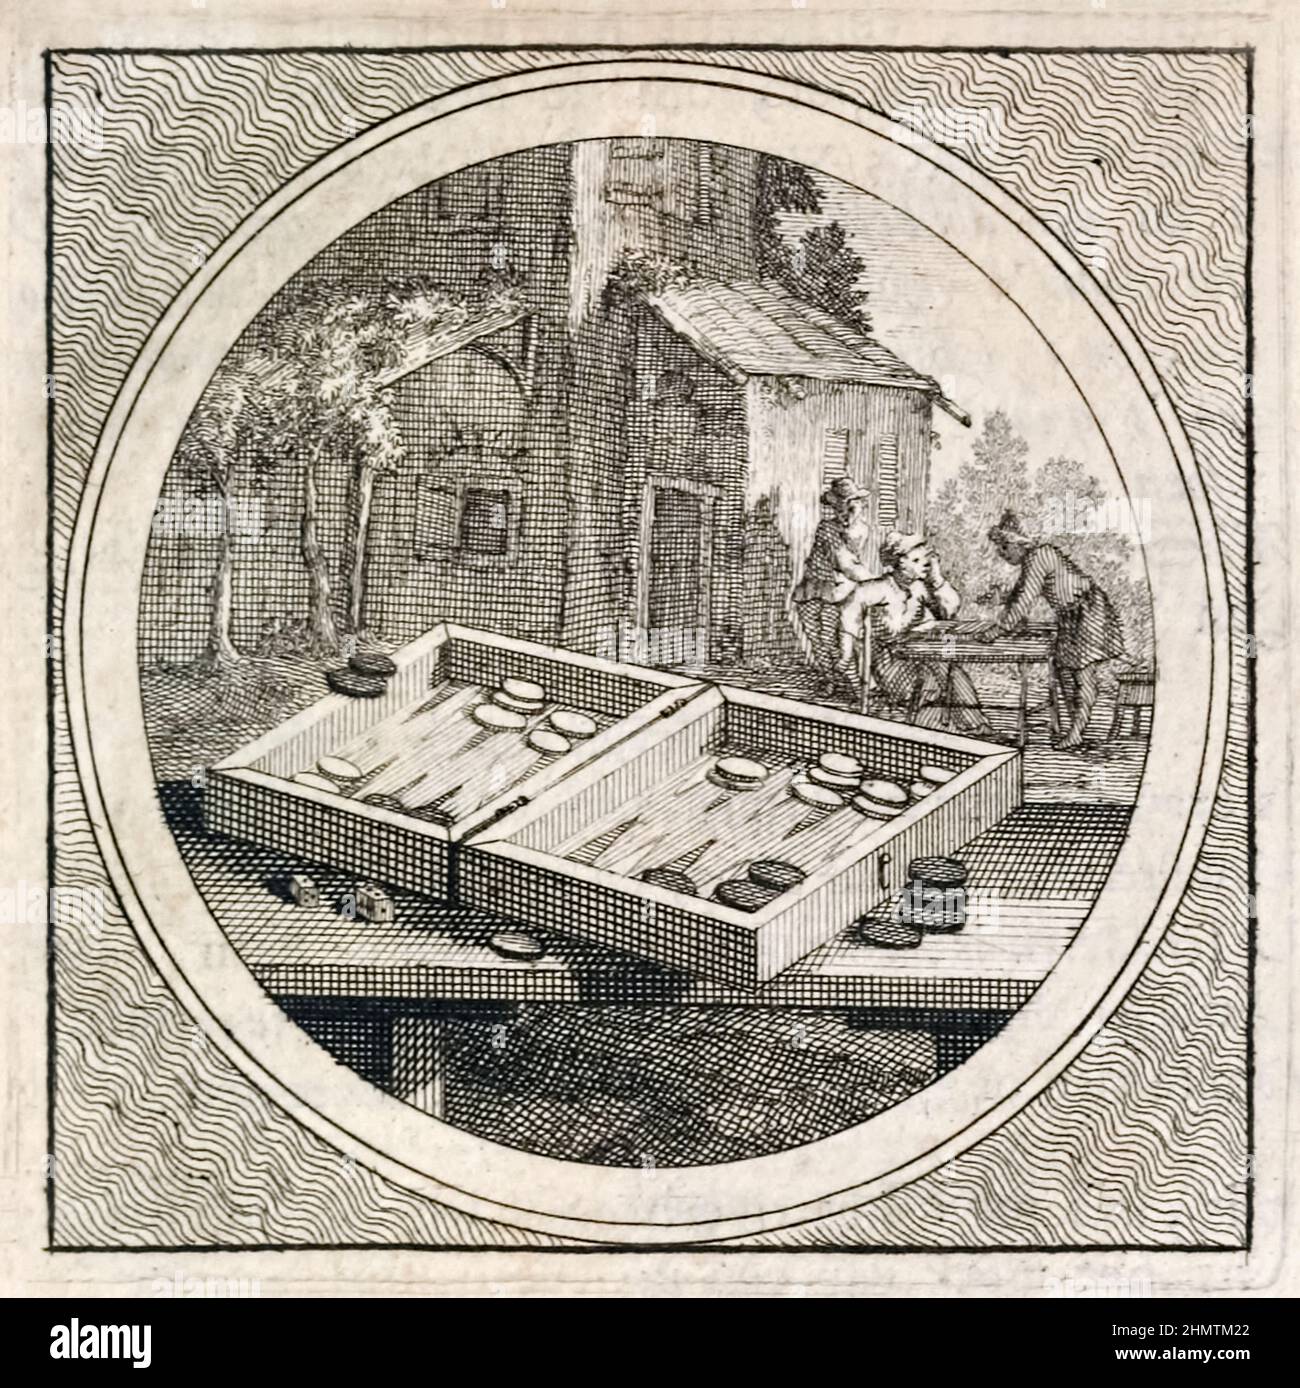 Backgammon-Set und Spieler von Stichtelyke Zinnebeelde von Arnold Houbraken (1660-1719). Foto der Originalgravur, veröffentlicht im Jahr 1723. Stockfoto